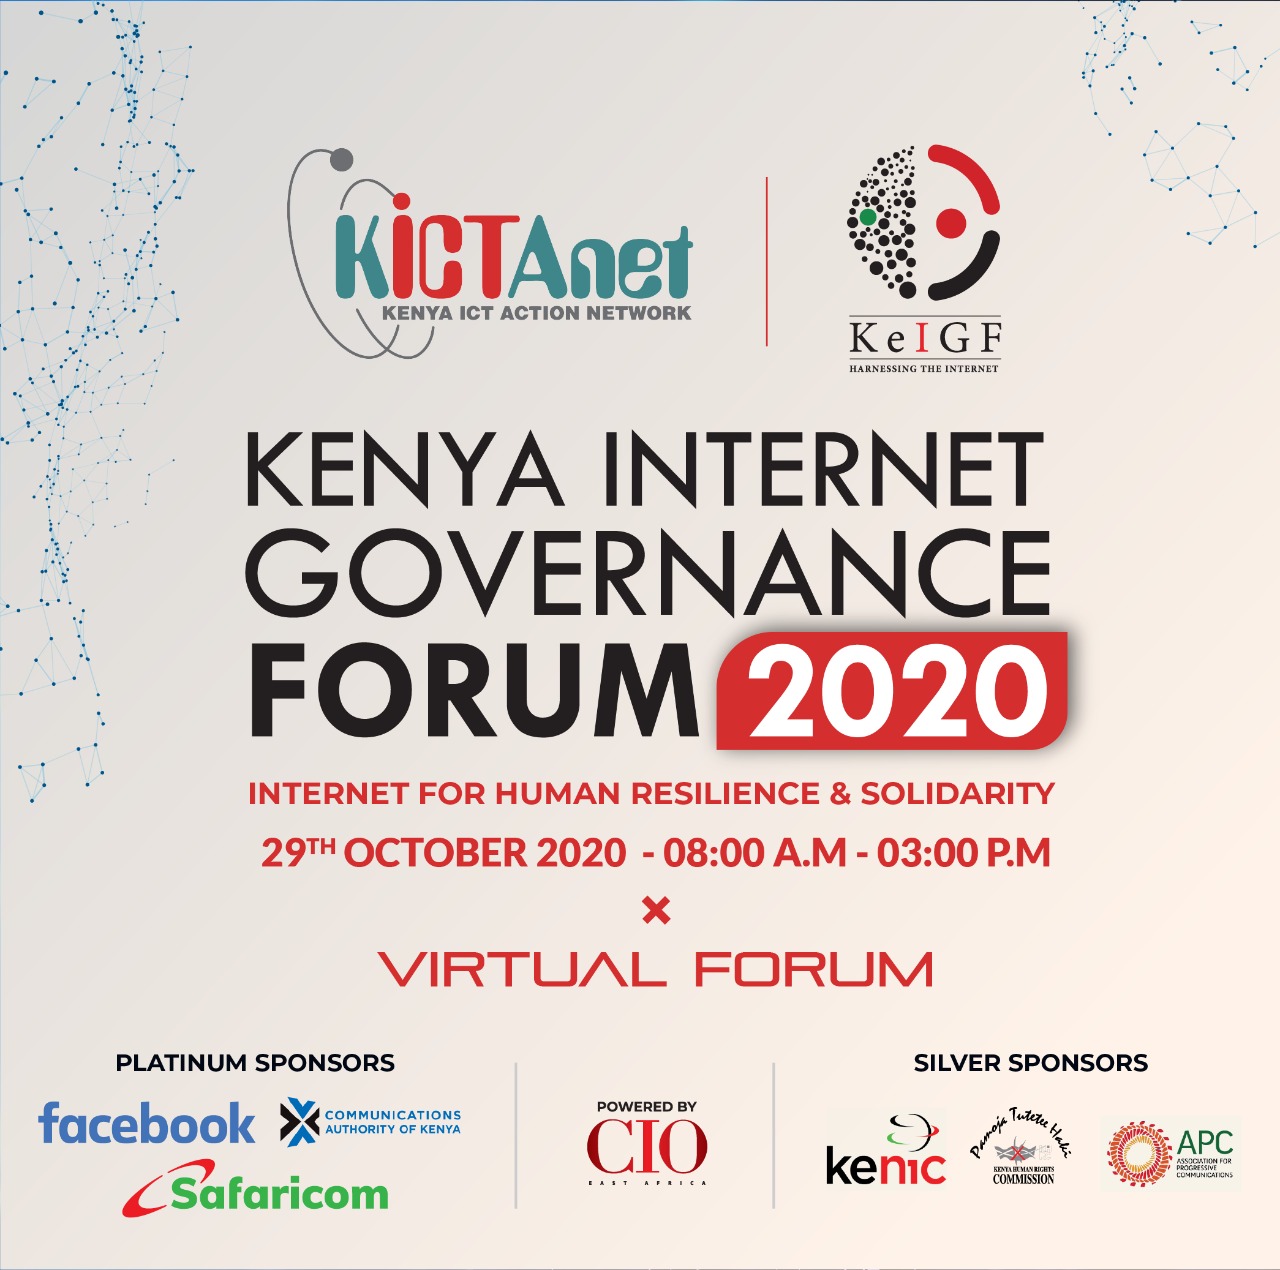 #KeIGF2020 needs you to show up for Internet governance.